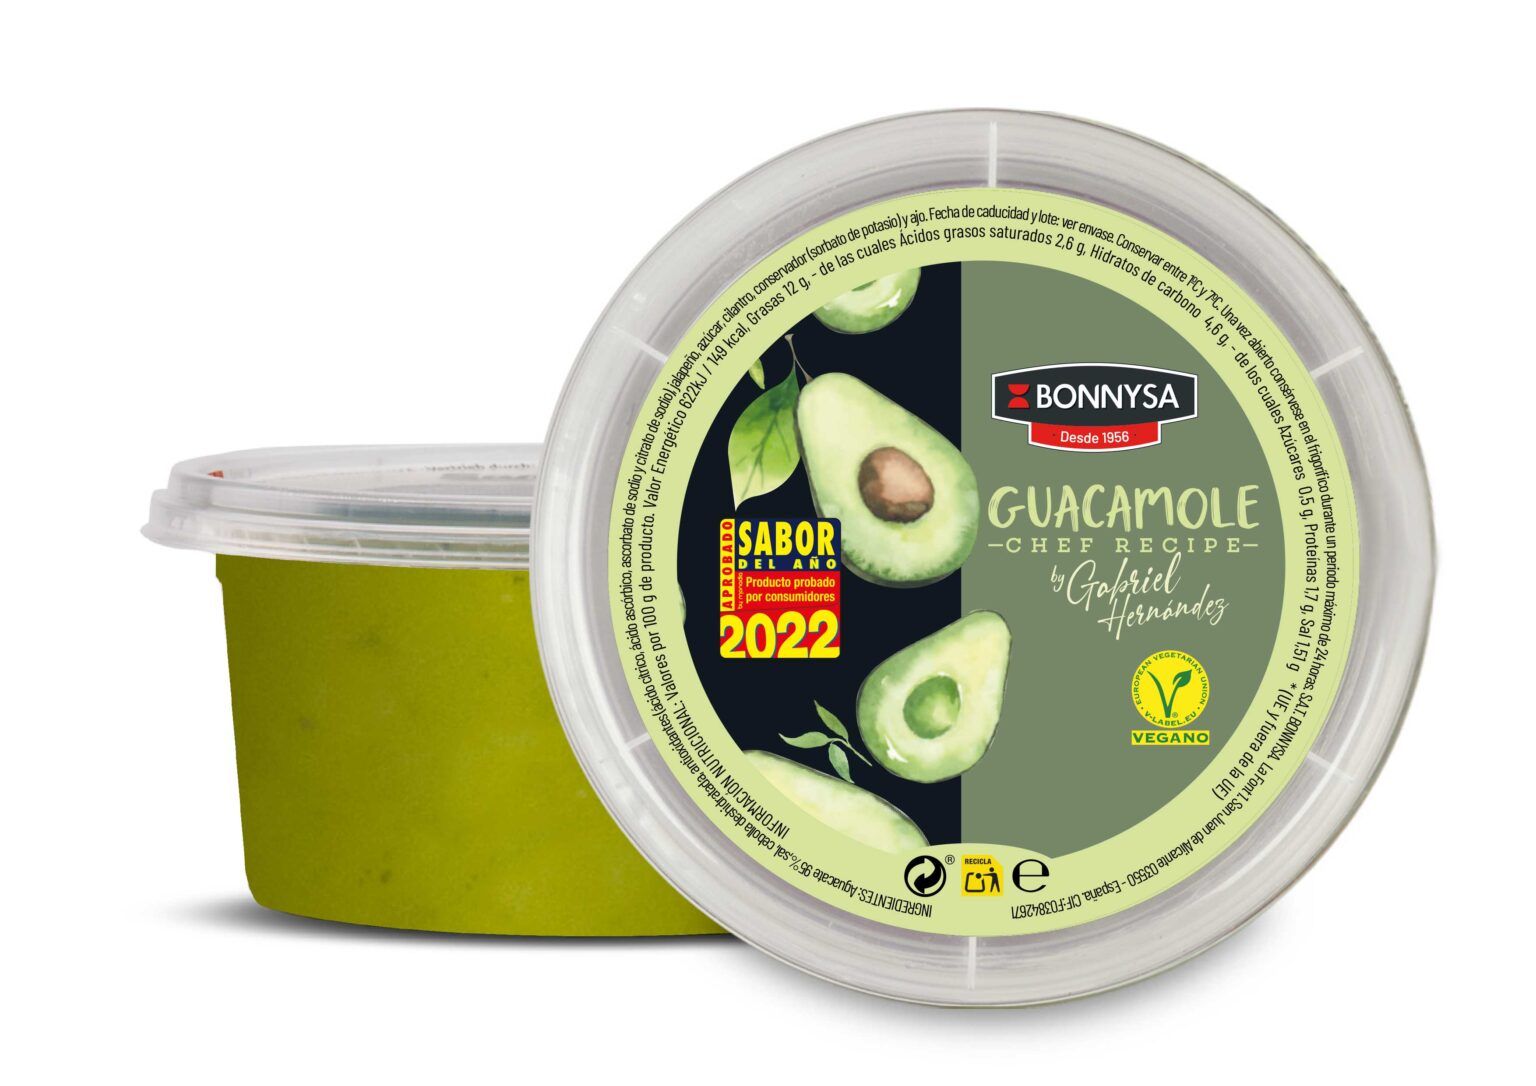 El Guacamole Chef Recipe de Bonnysa, empresa agroalimentaria alicantina líder en nuestro país, acaba de ser nombrado como “Sabor del Año” 2022. 